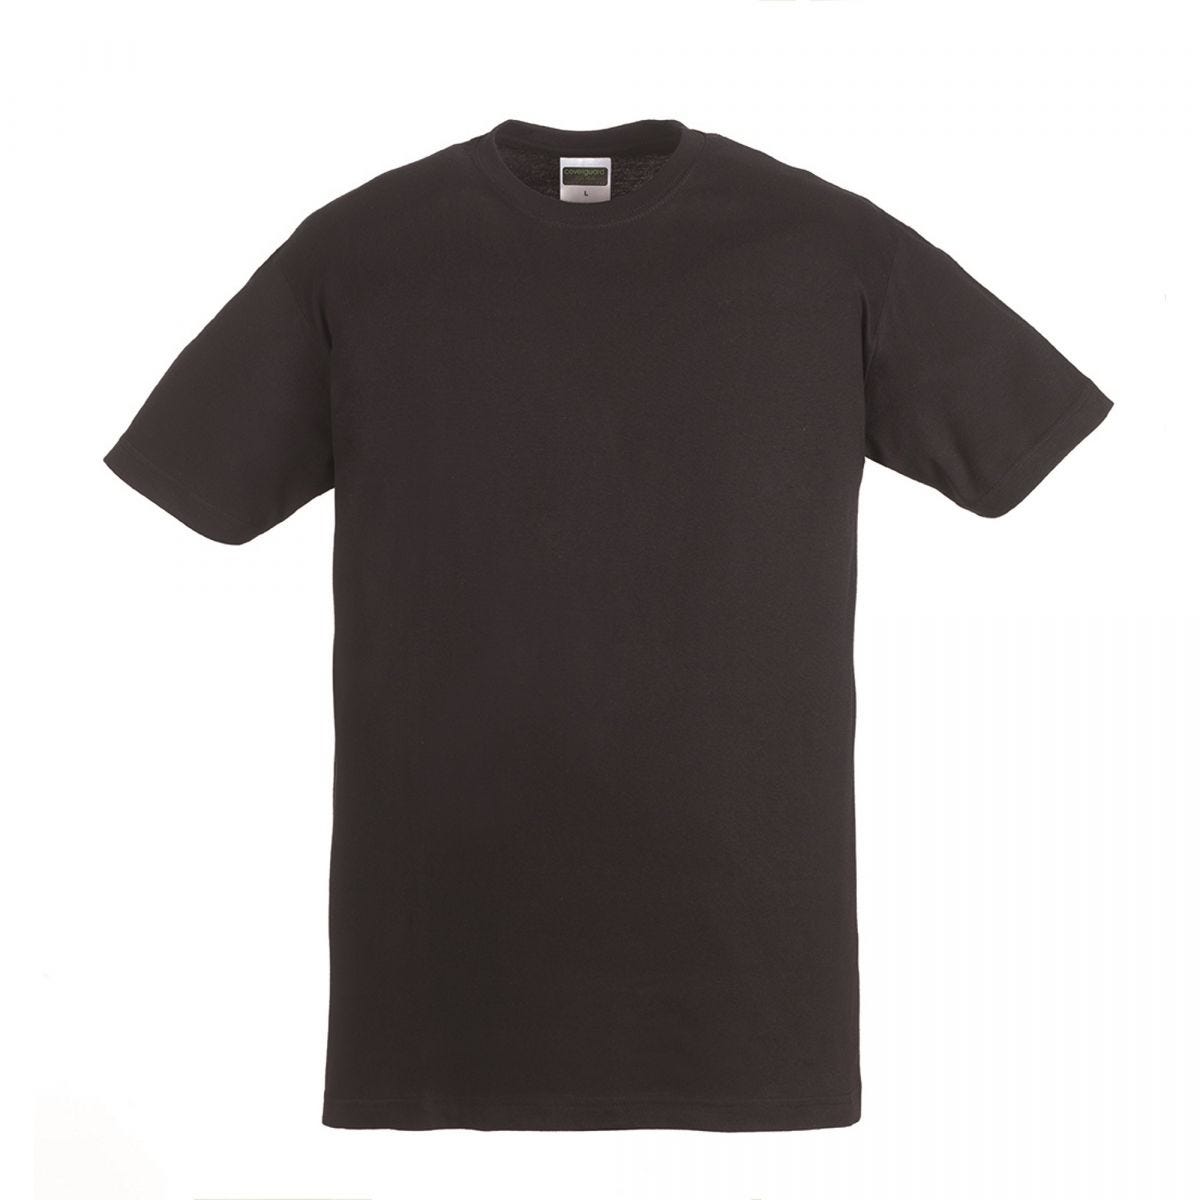 HIKE T-shirt MC noir, 100% coton, 190g/m² - COVERGUARD - Taille XL 0